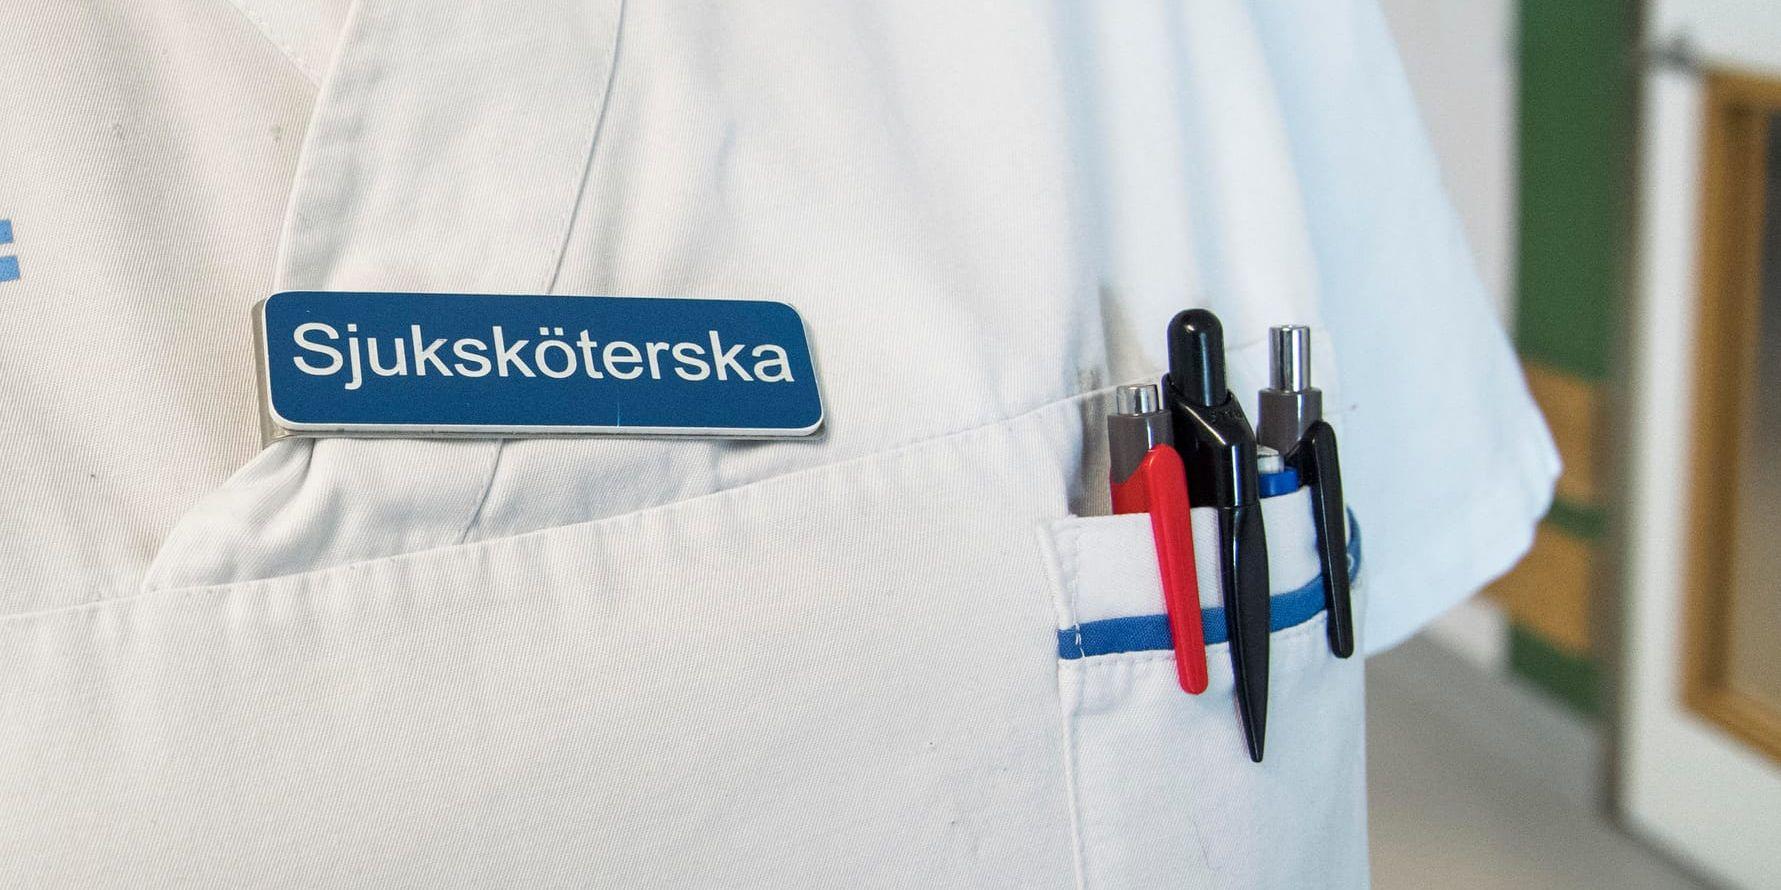 Ett sjukhus i Västsverige anmäler en sjuksköterska till Inspektionen för vård och omsorg (Ivo). Anmälan kommer sedan stora mängder narkotiska preparat försvunnit från sjuksköterskans arbetsplats. Arkivbild.